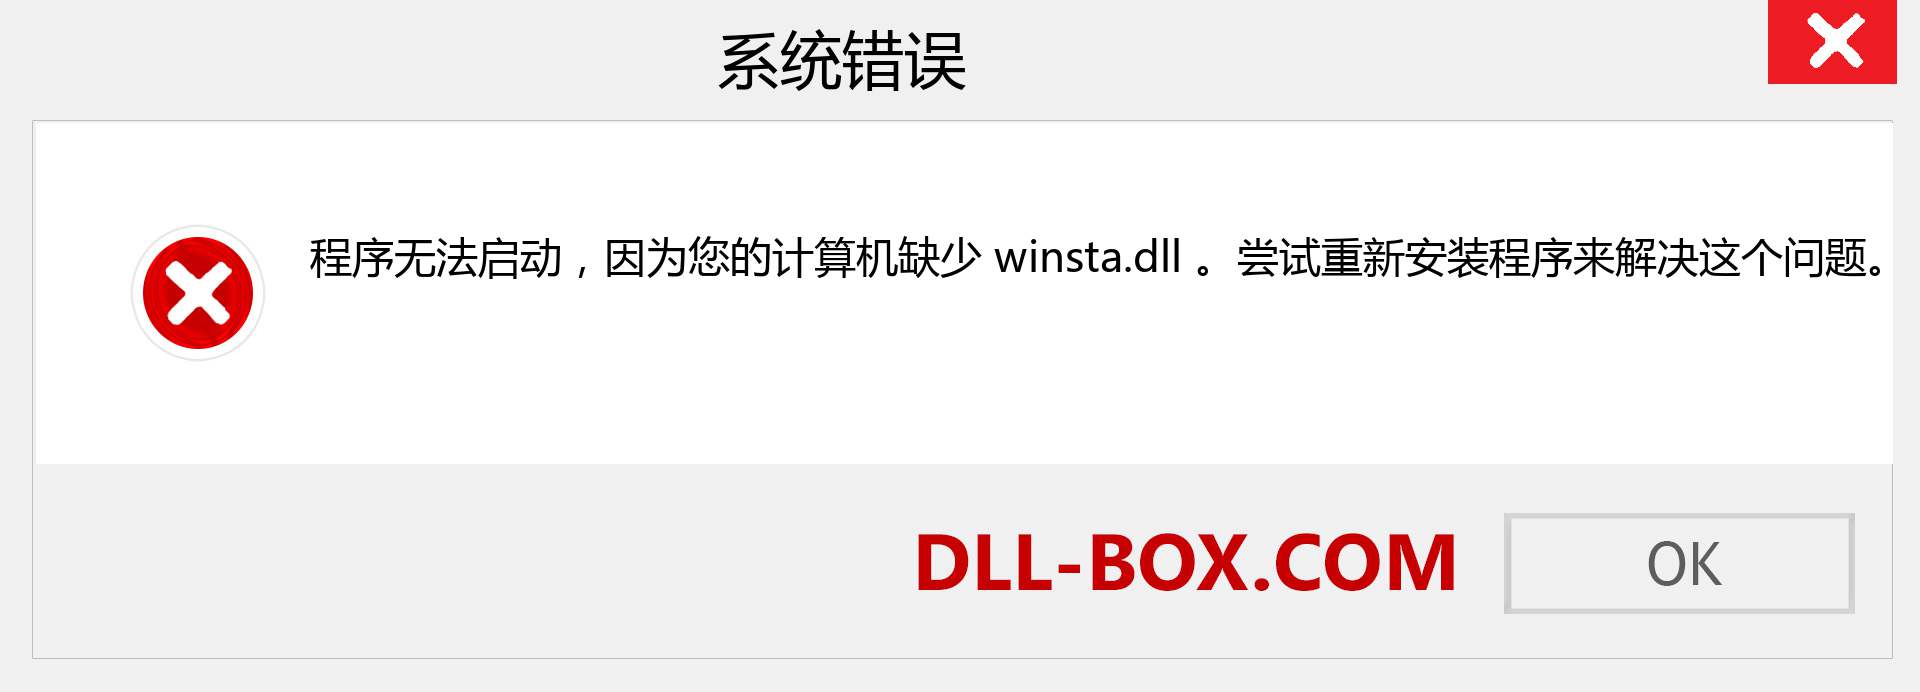 winsta.dll 文件丢失？。 适用于 Windows 7、8、10 的下载 - 修复 Windows、照片、图像上的 winsta dll 丢失错误